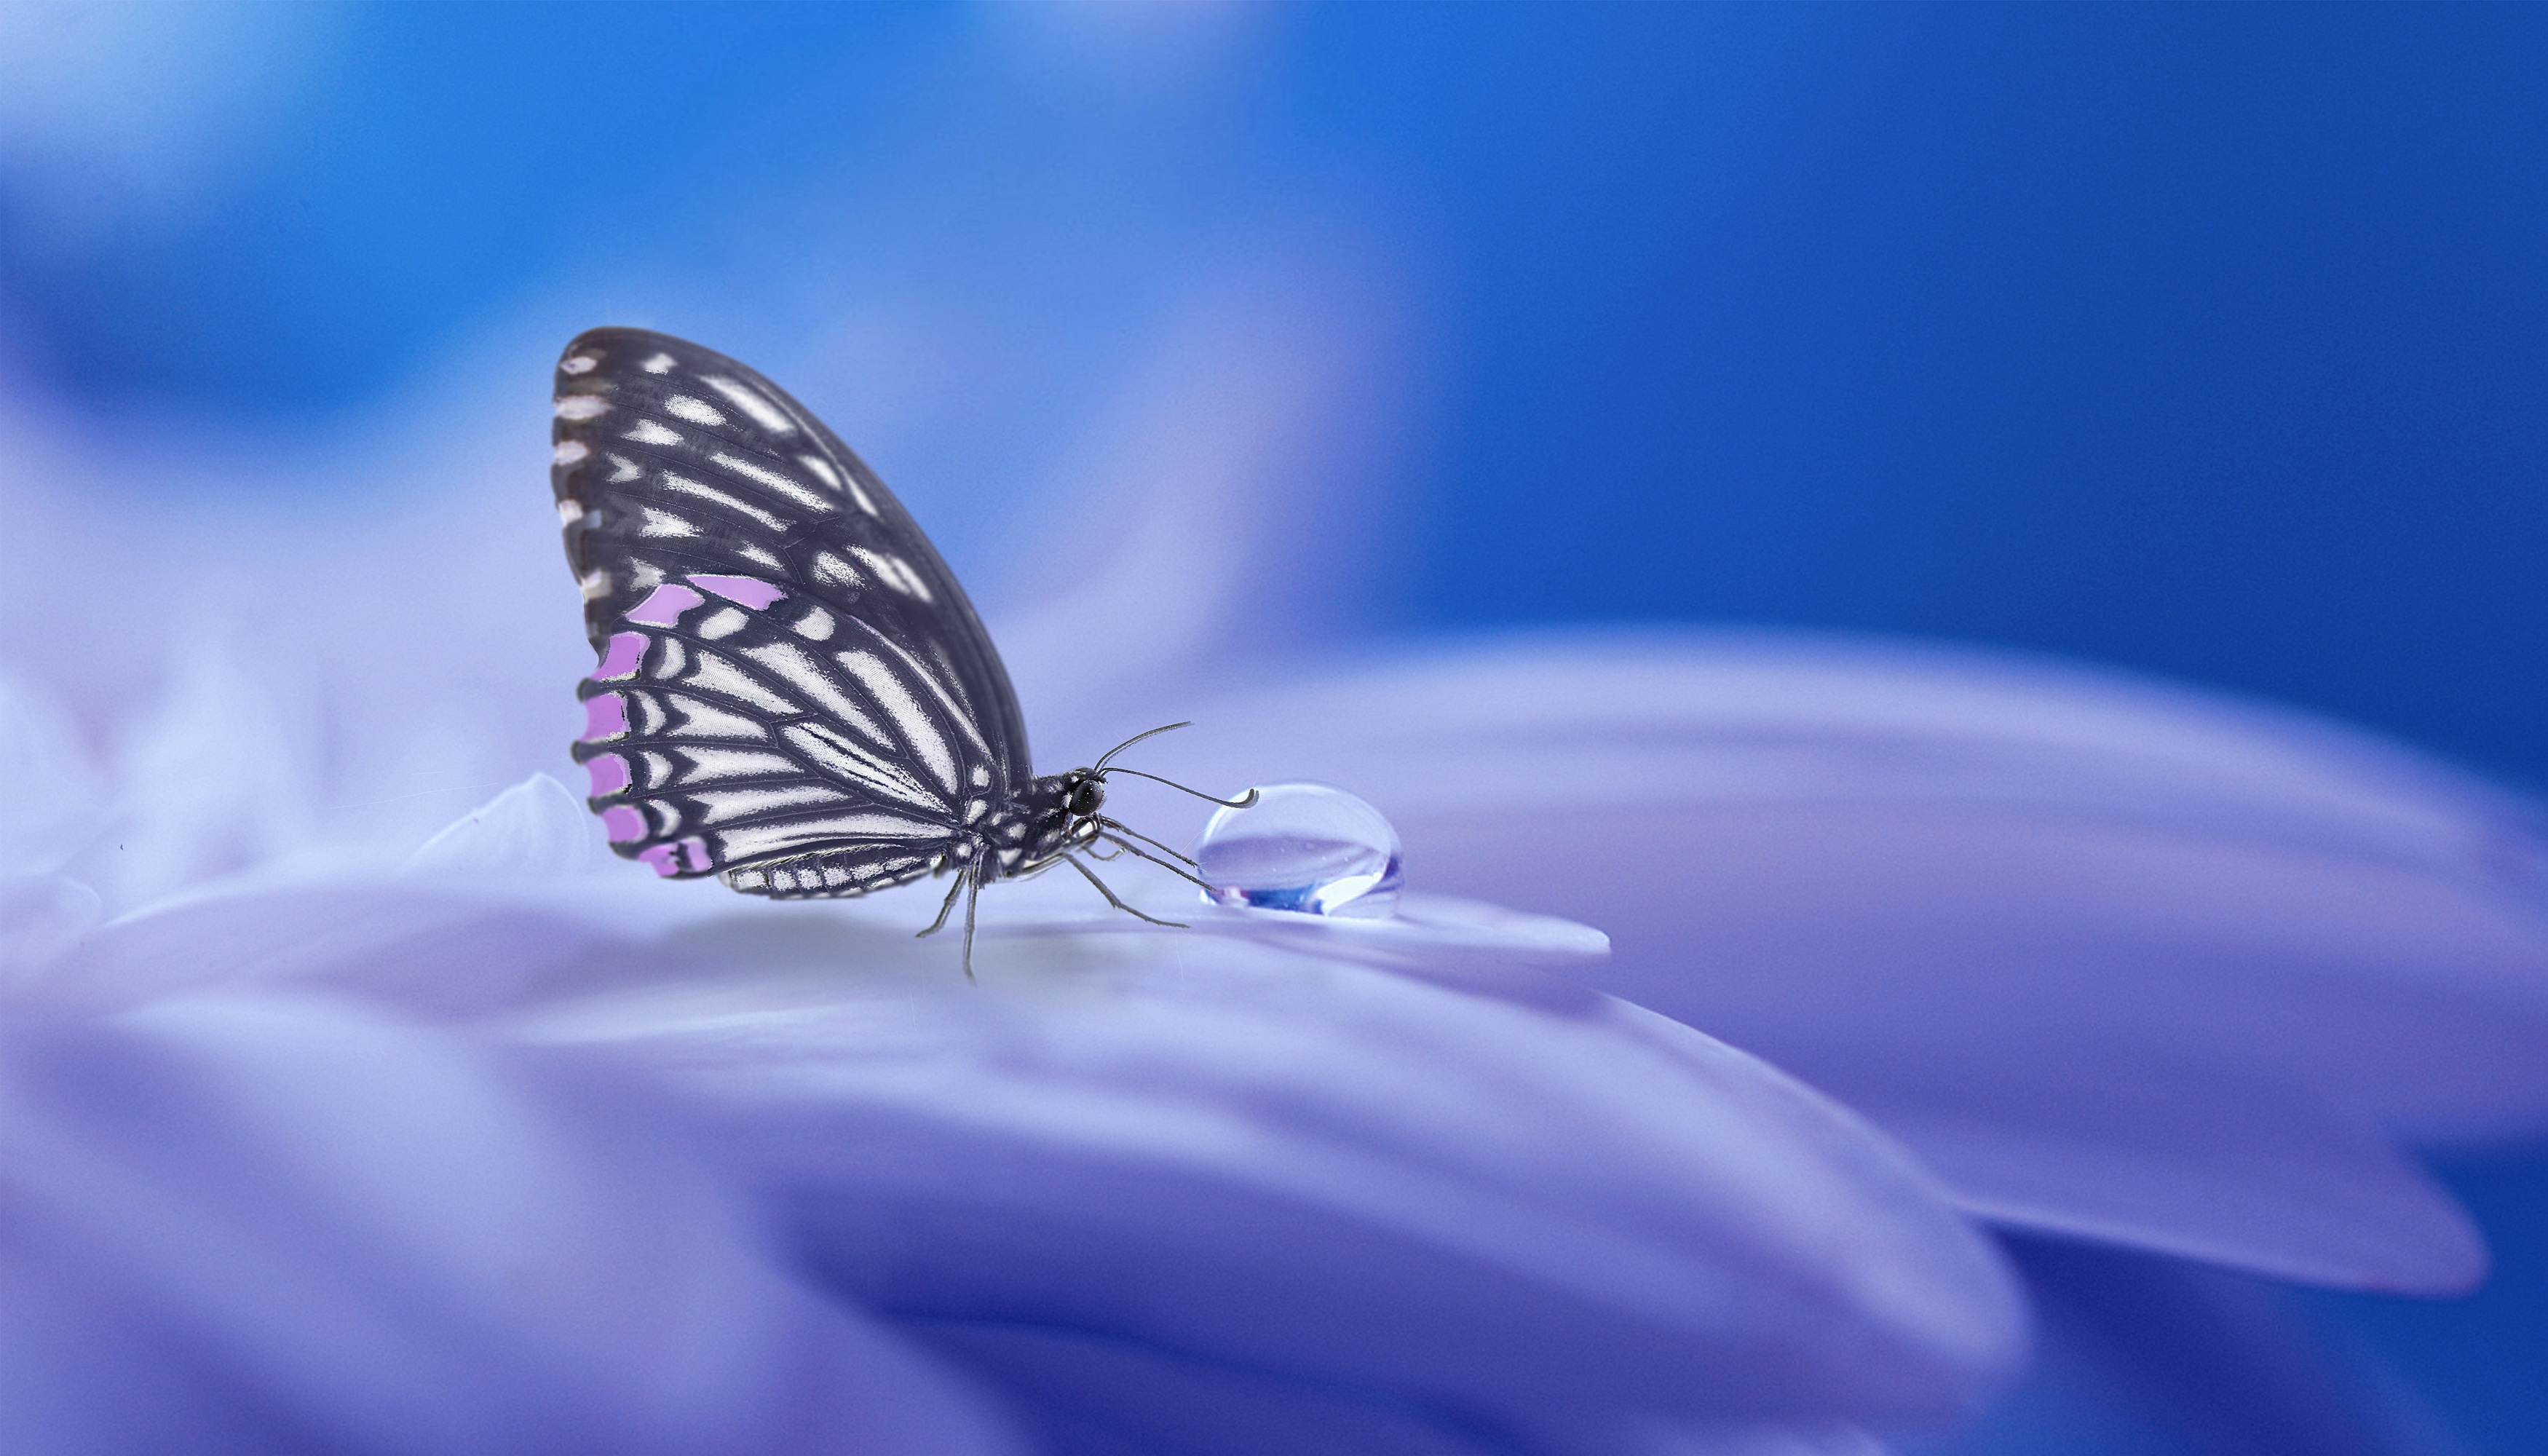 Wallpapers flower butterfly drop on the desktop